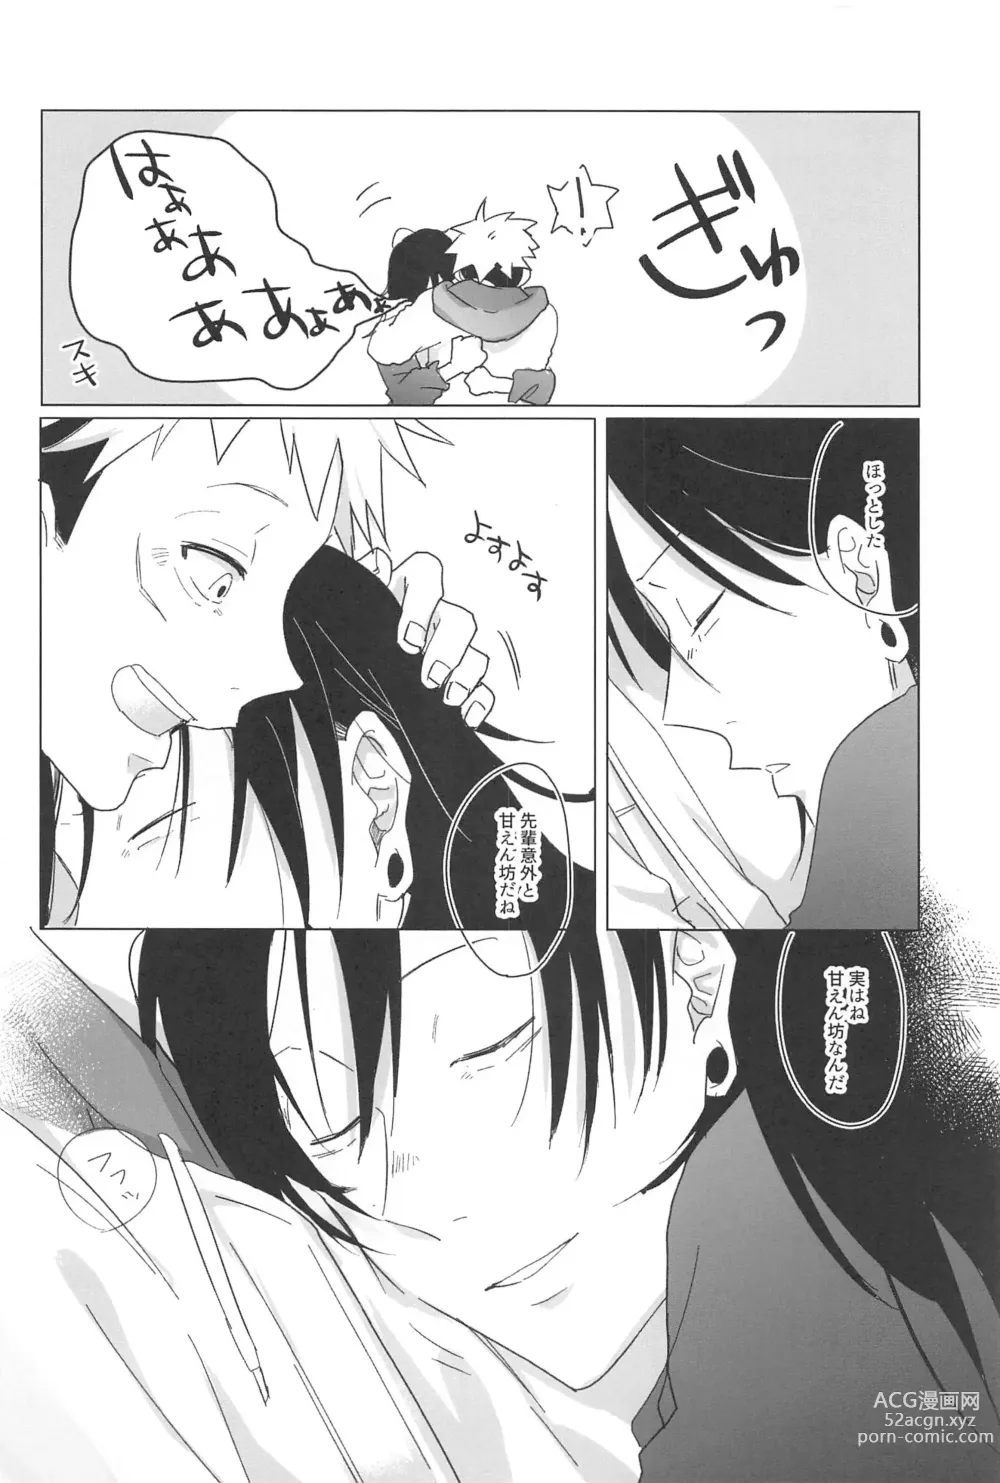 Page 35 of doujinshi Kocchi Muite! Senpai!!